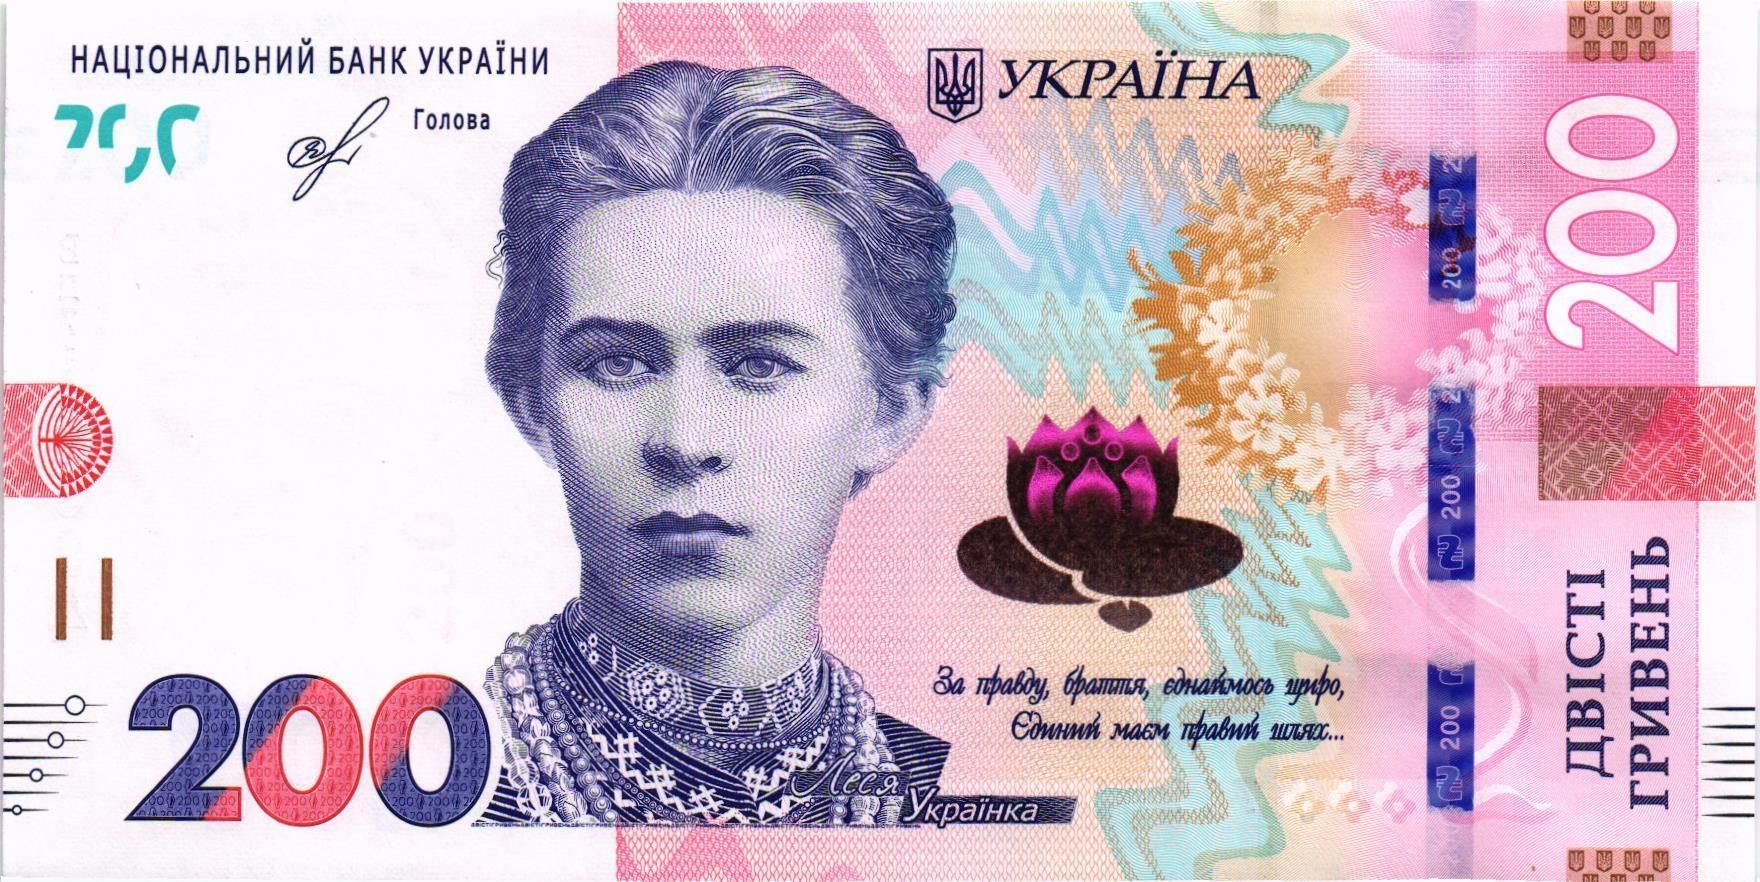 УКРАИНА 200 ГРИВЕН (-ВД- ПРЕФИКС)